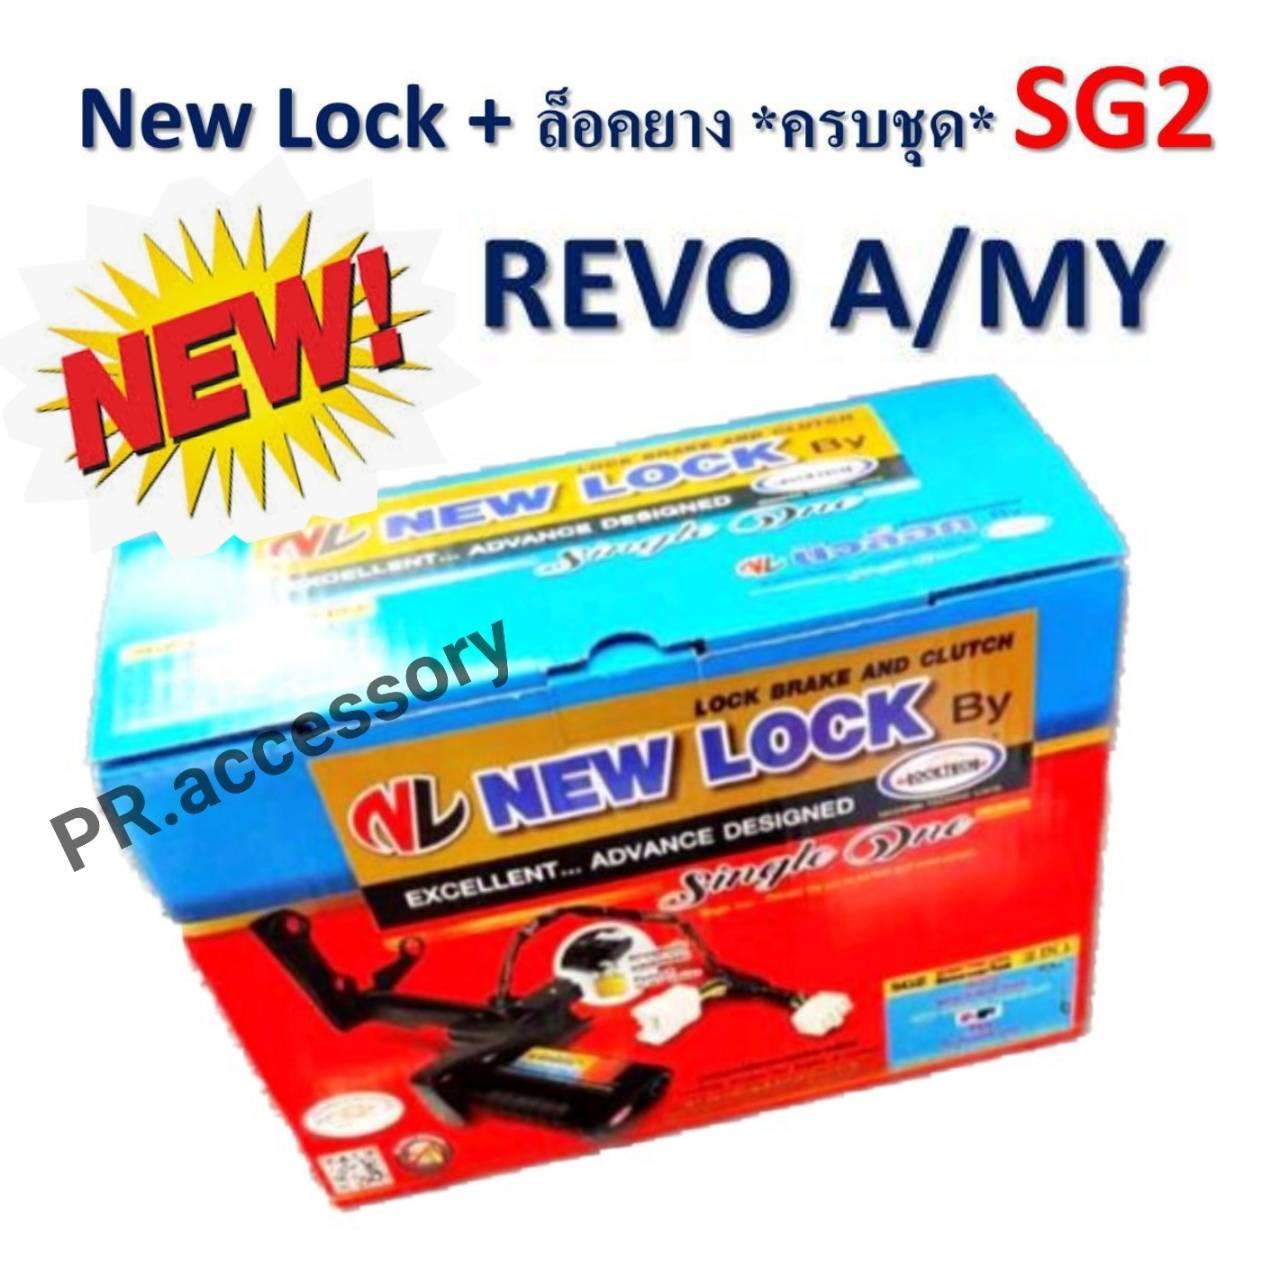 New Lock + ล็อคยางอะไหล่ ระบบกุญแจ ความปลอดภัยสูง SG2 REVO A/MY